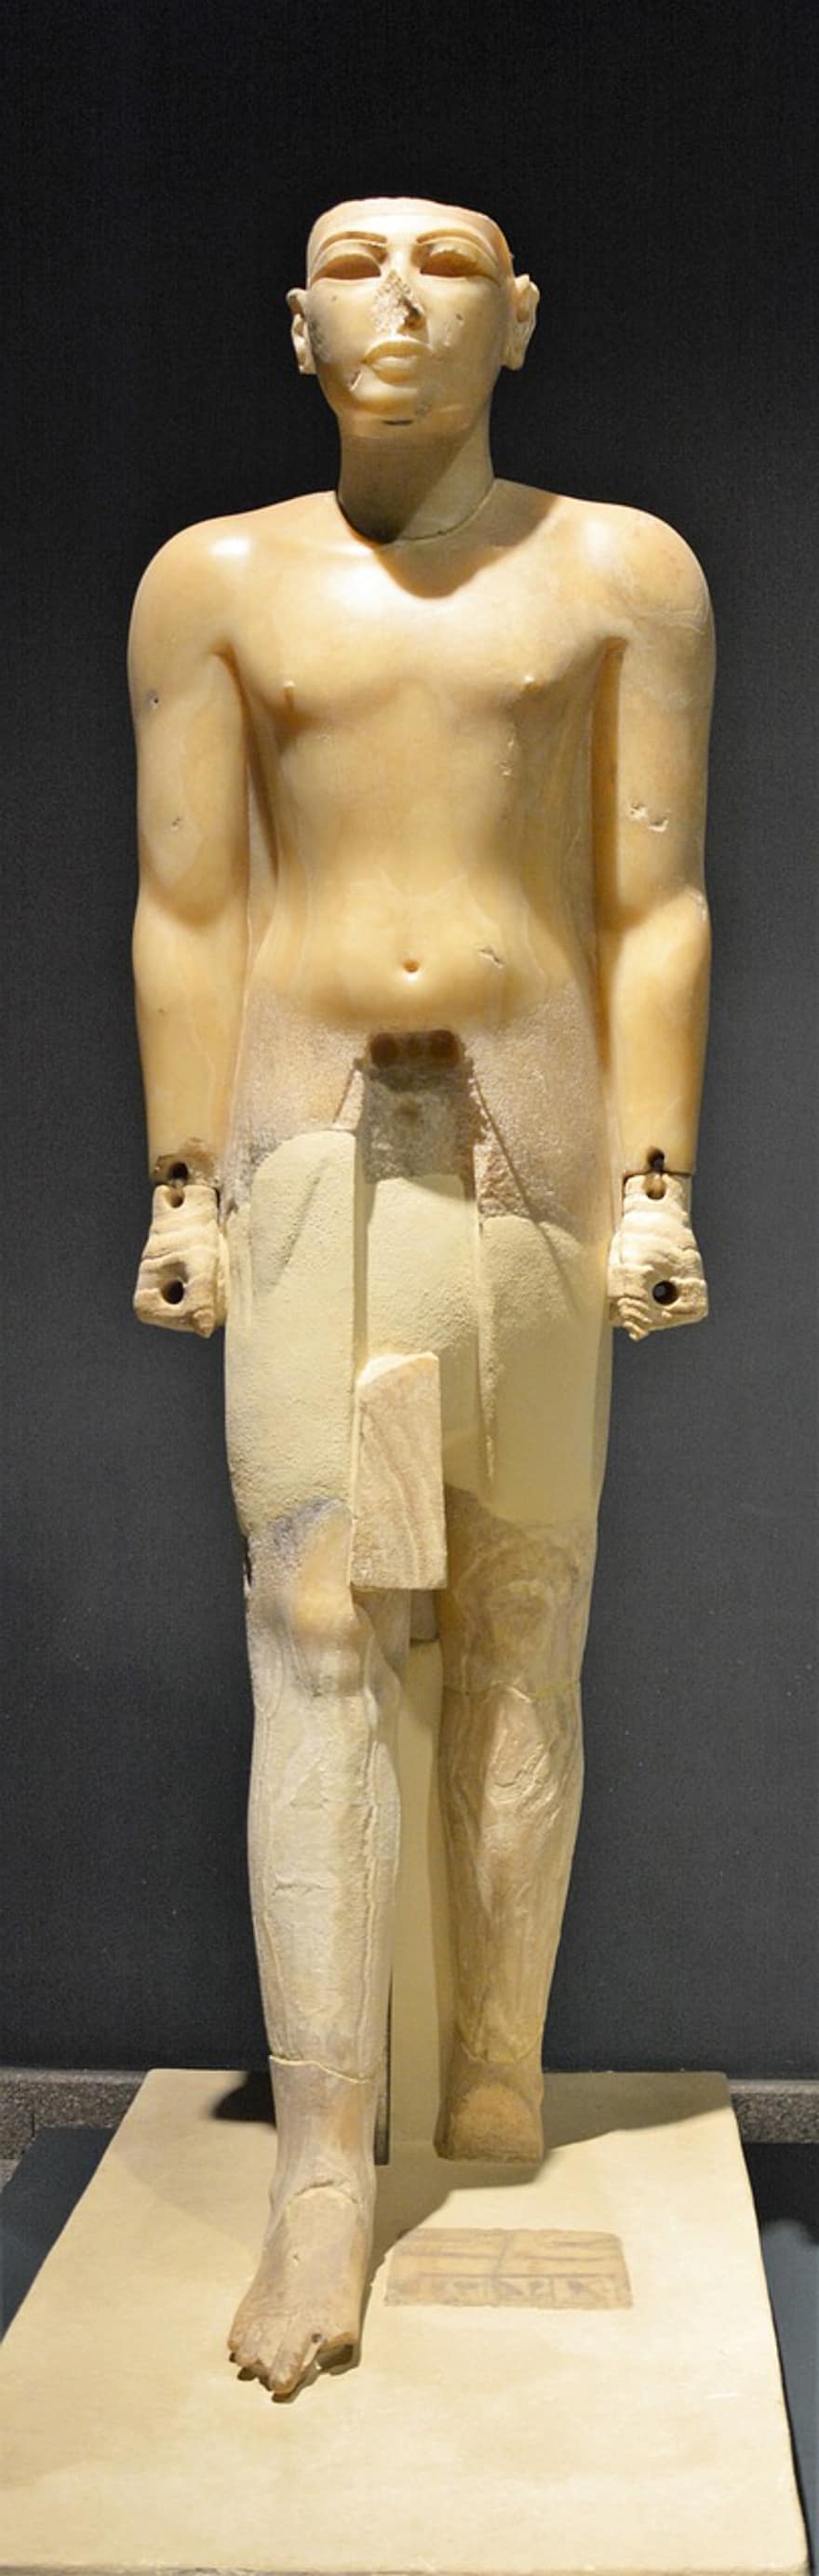 статуя, древняя скульптура, Древнеегипетский артефакт, музей